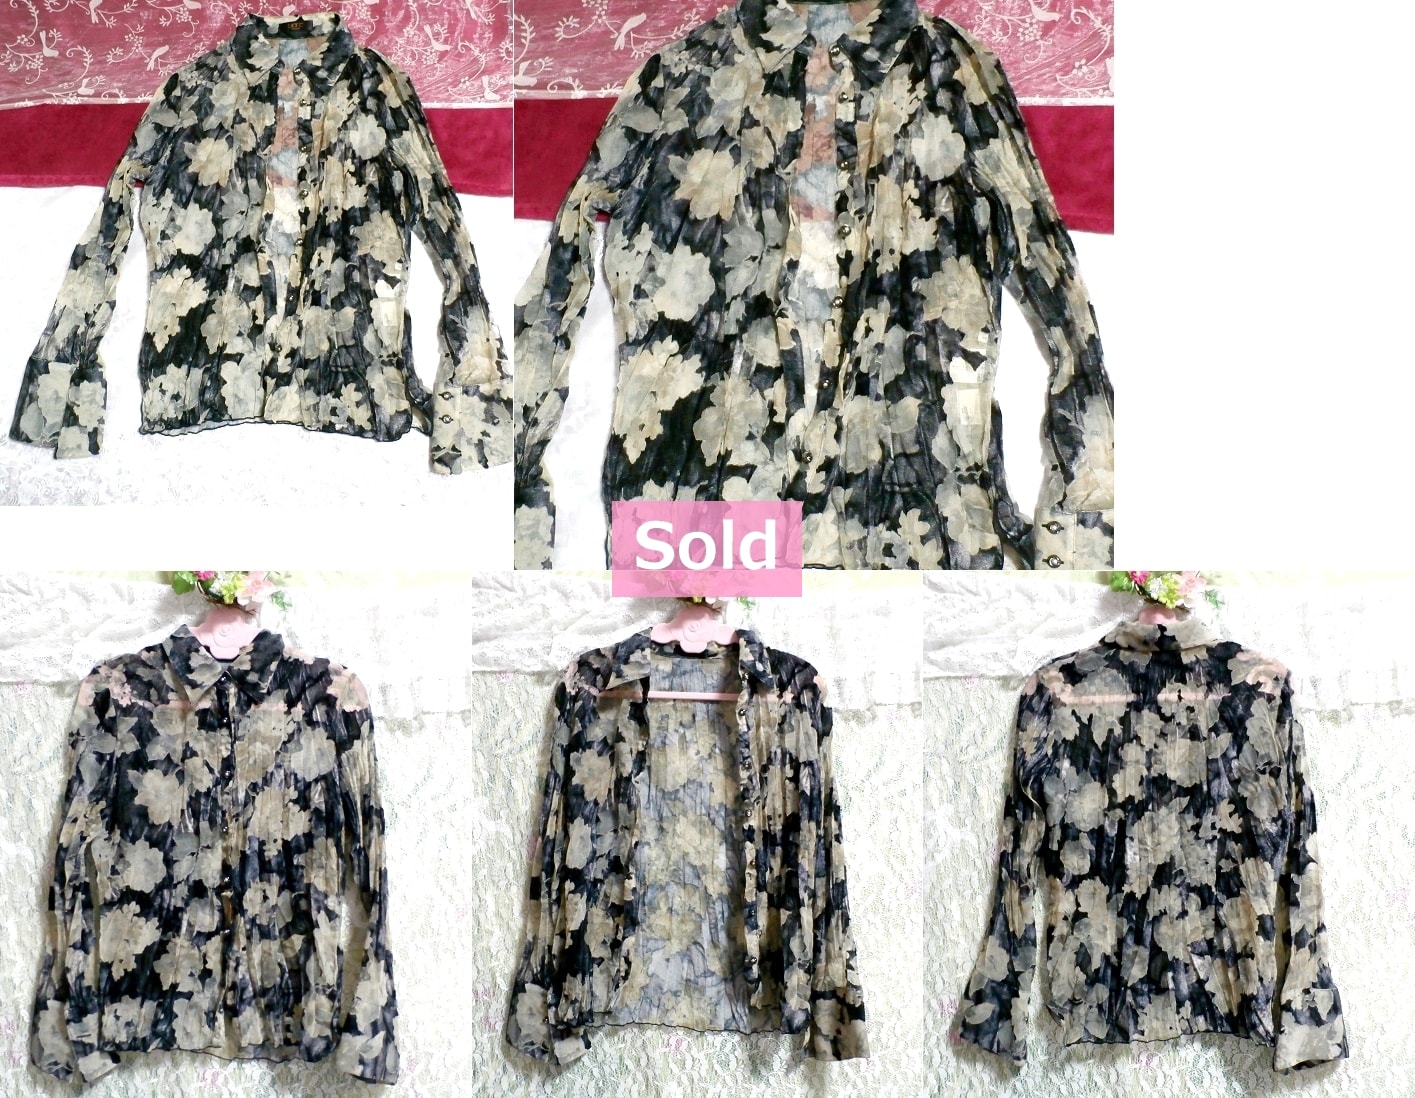 黒黄土花柄シースルーシフォンブラウス/トップス/羽織 Black ocher floral print see through chiffon blouse/tops/coat